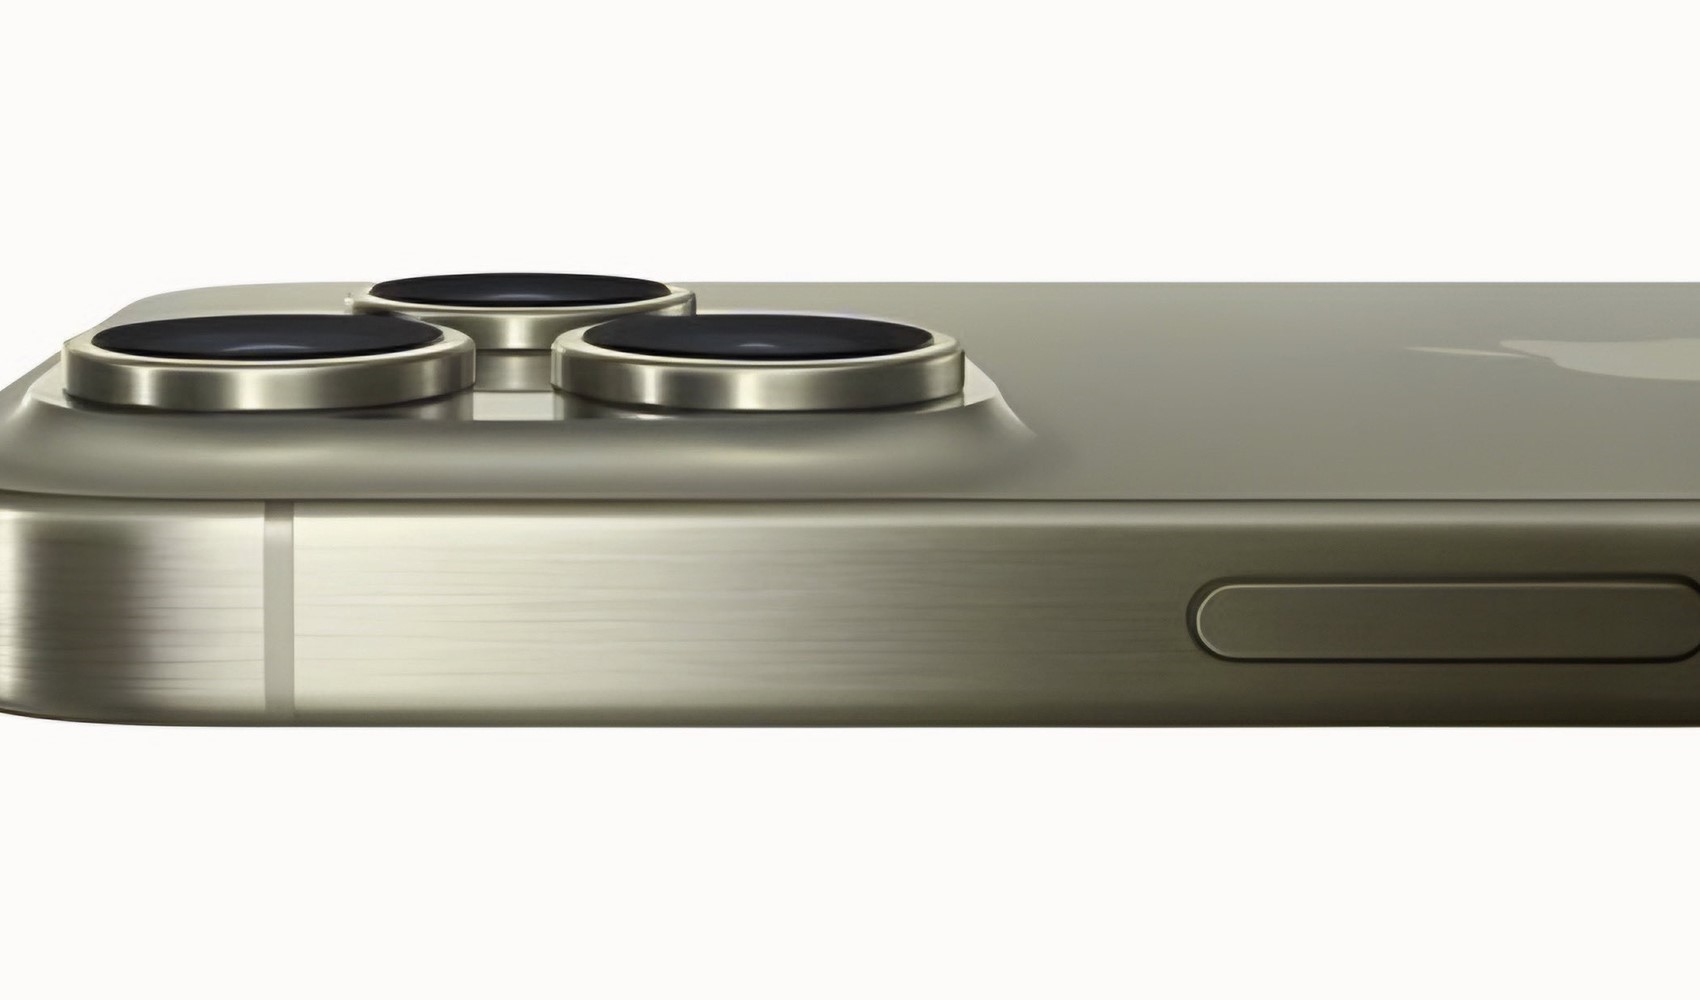 iPhone 16 Pro tasarımı ortaya çıktı: Daha büyük ekran ve 5X telefoto kamera!